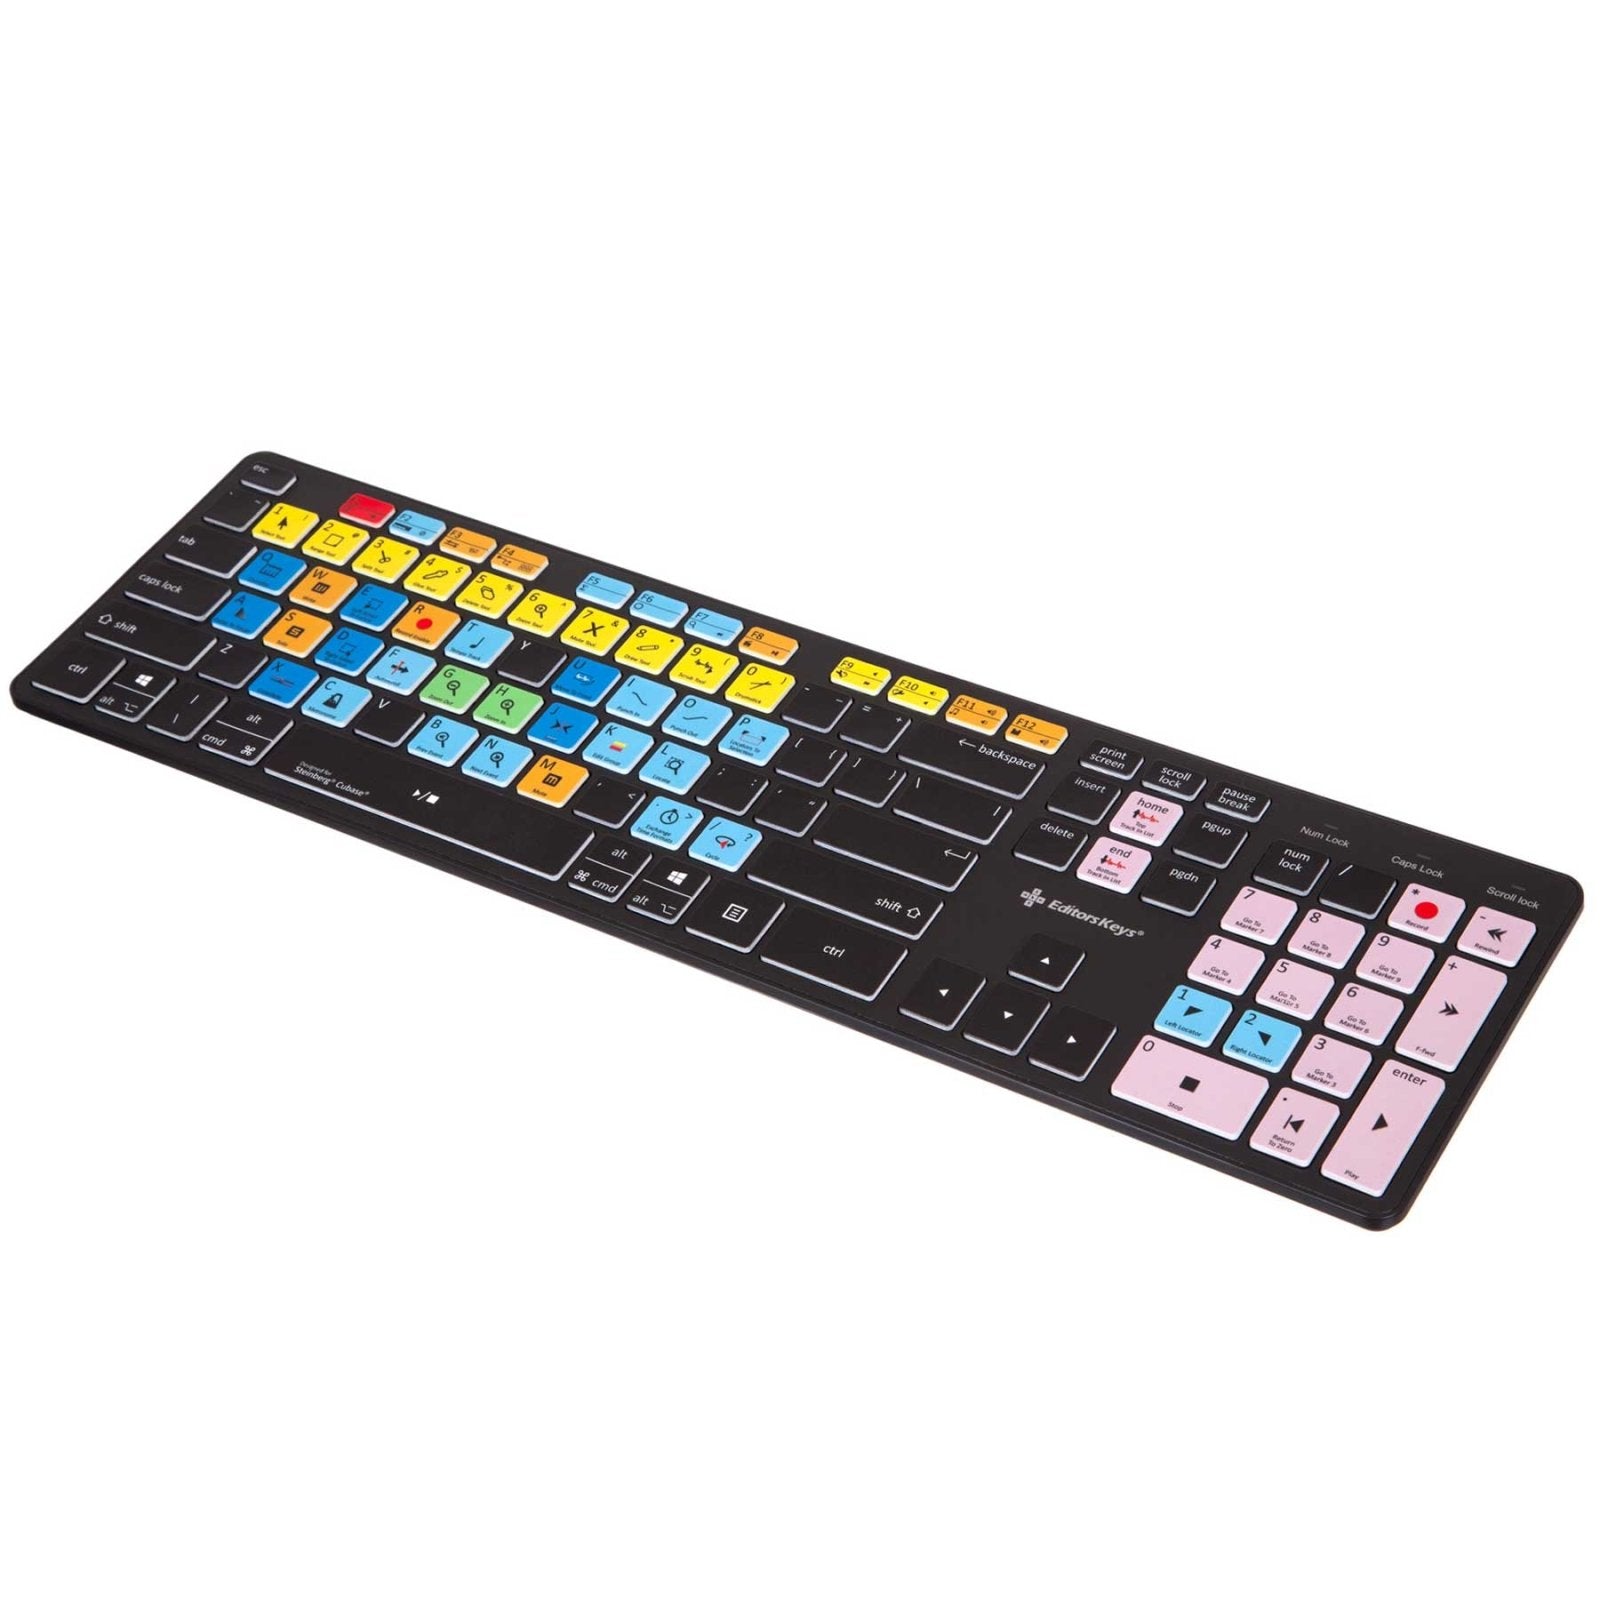 Cubase Keyboard Shortcuts - Slimline Keyboard 3